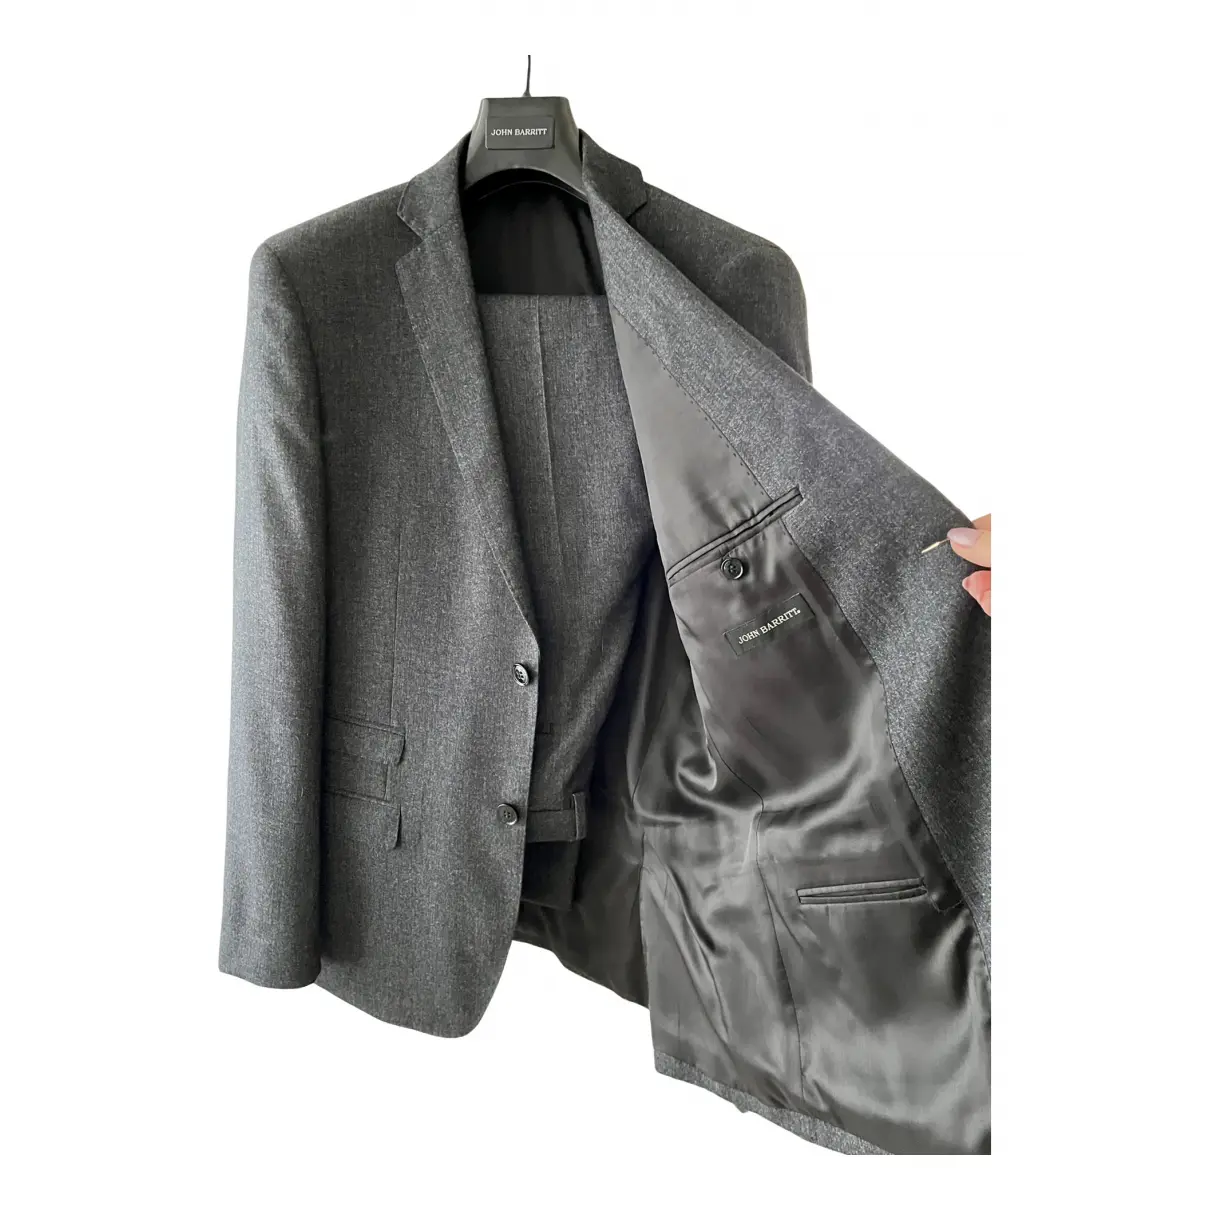 Buy John Barritt Wool jacket online